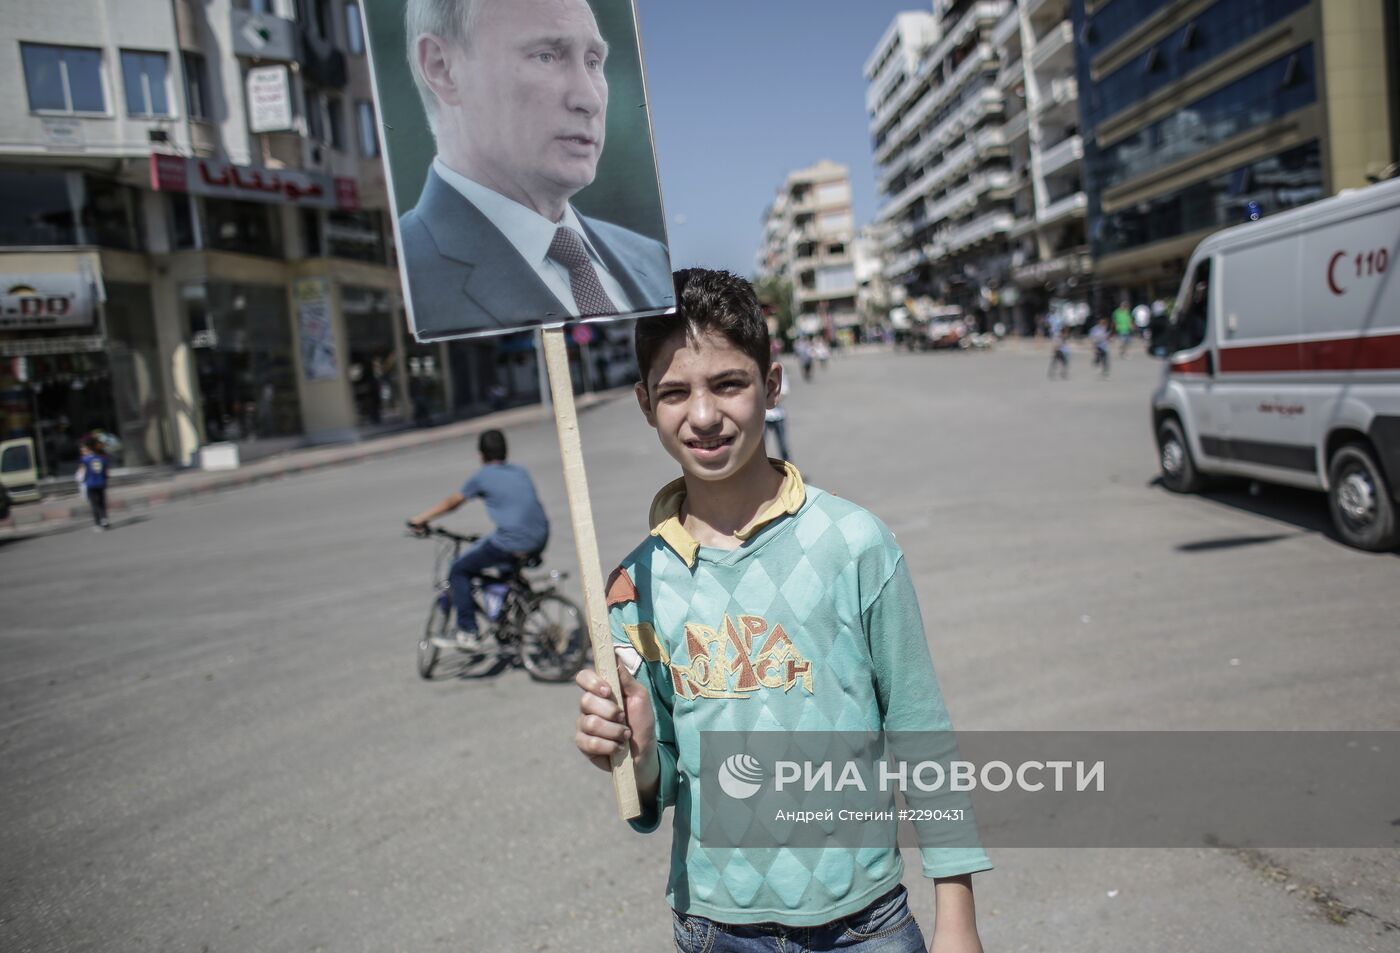 Митинг в поддержку Б. Асада и В. Путина в Сирии